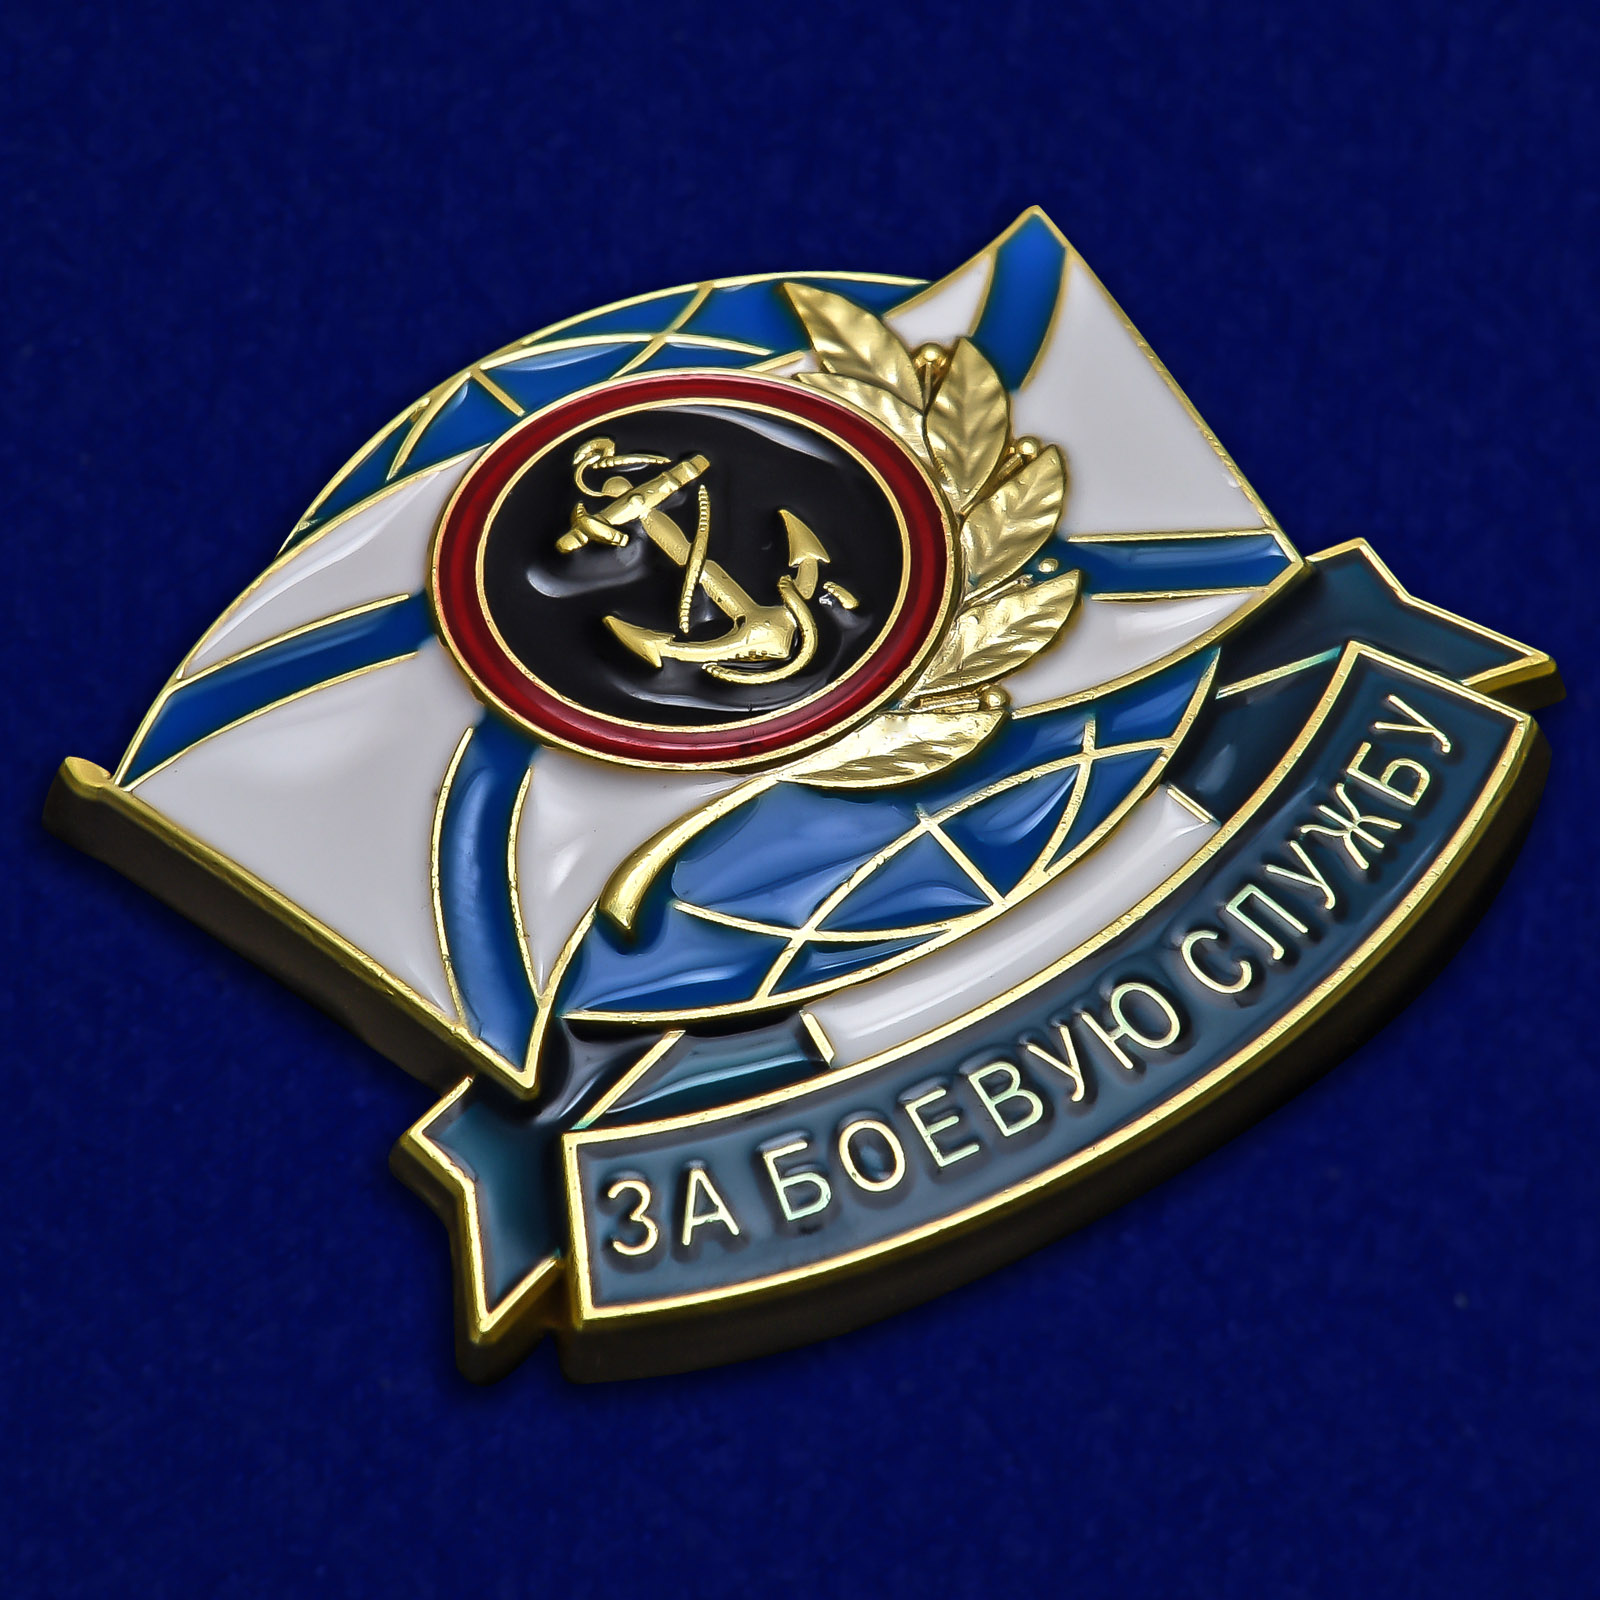 Знак "За боевую службу" ВМФ Морская пехота